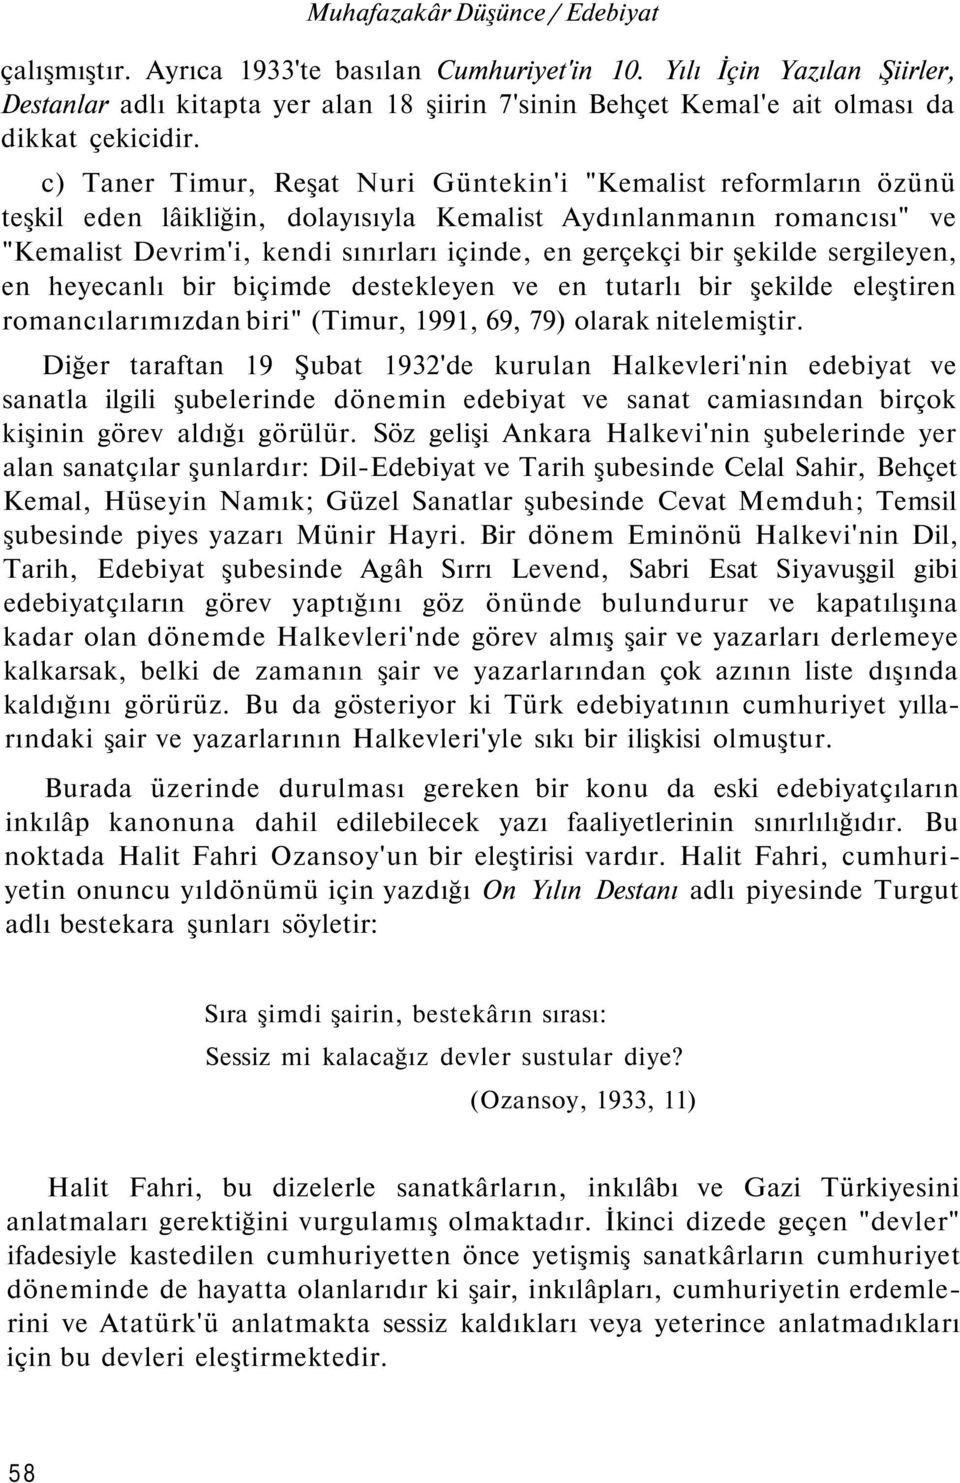 c) Taner Timur, Reşat Nuri Güntekin'i "Kemalist reformların özünü teşkil eden lâikliğin, dolayısıyla Kemalist Aydınlanmanın romancısı" ve "Kemalist Devrim'i, kendi sınırları içinde, en gerçekçi bir